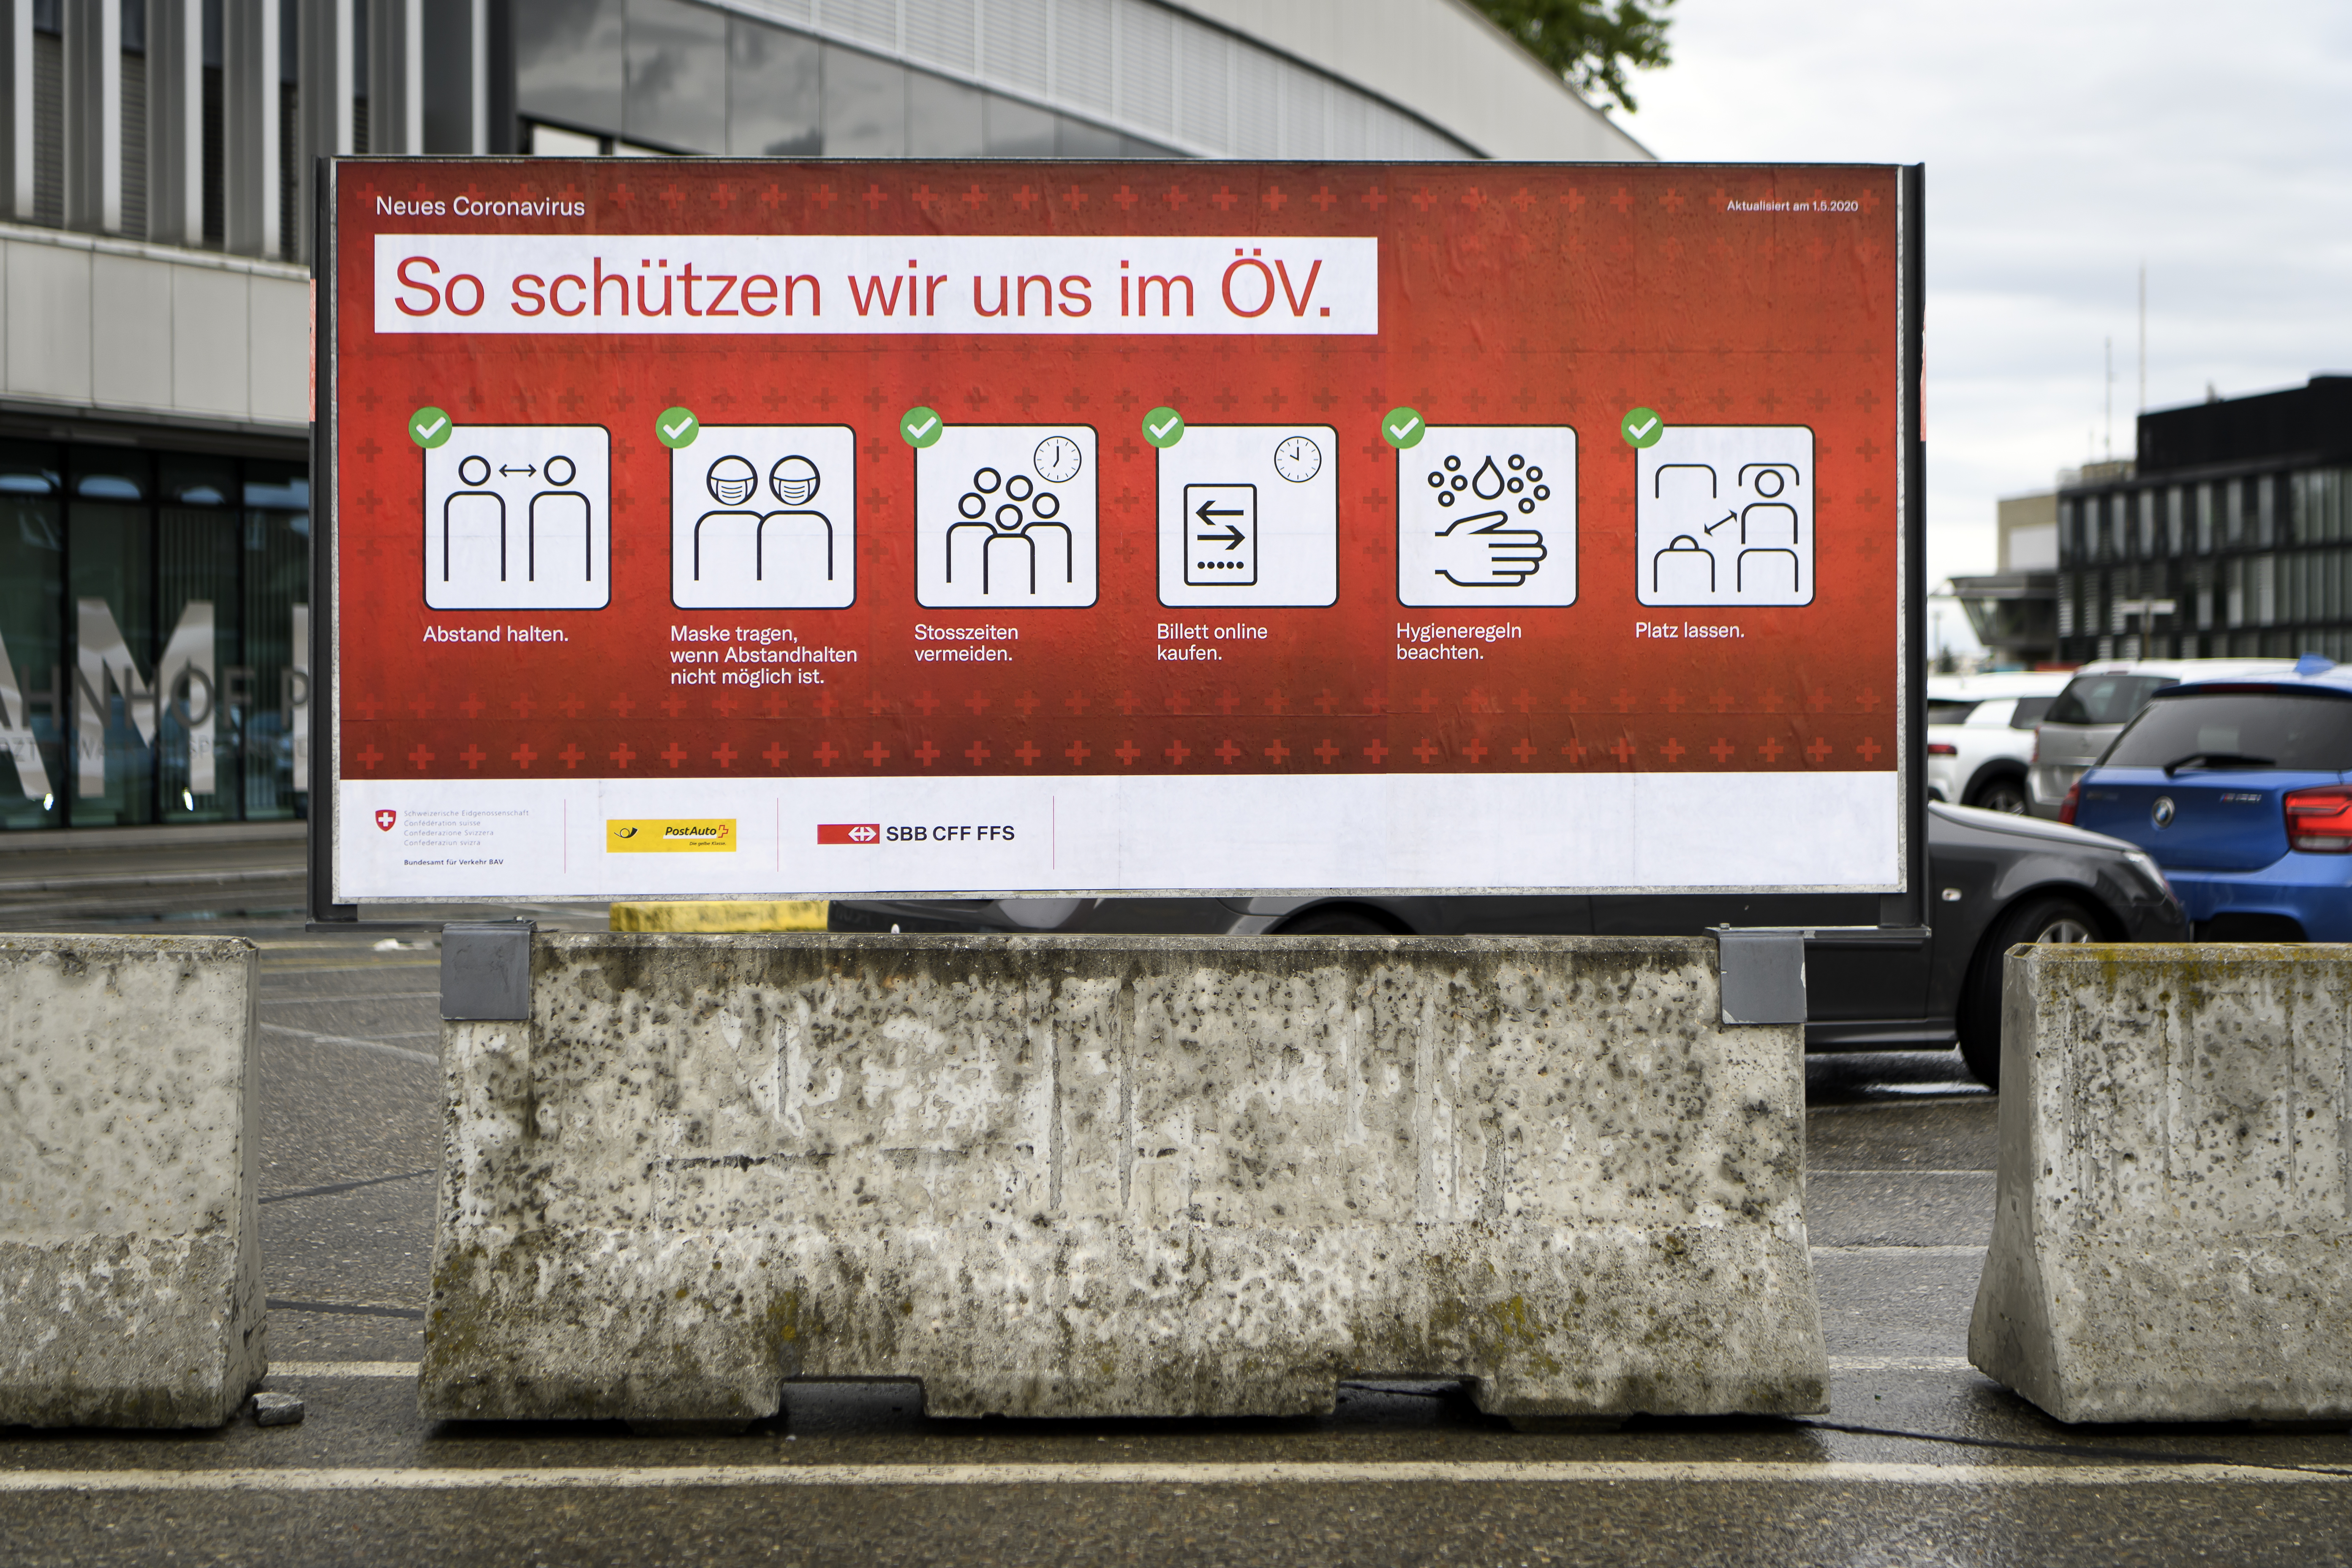 Ein Plakat beim Bahnhof Bern, das auf Schutzmassnahmen gegen Covid19 im öffentlichen Verkehr hinweist.